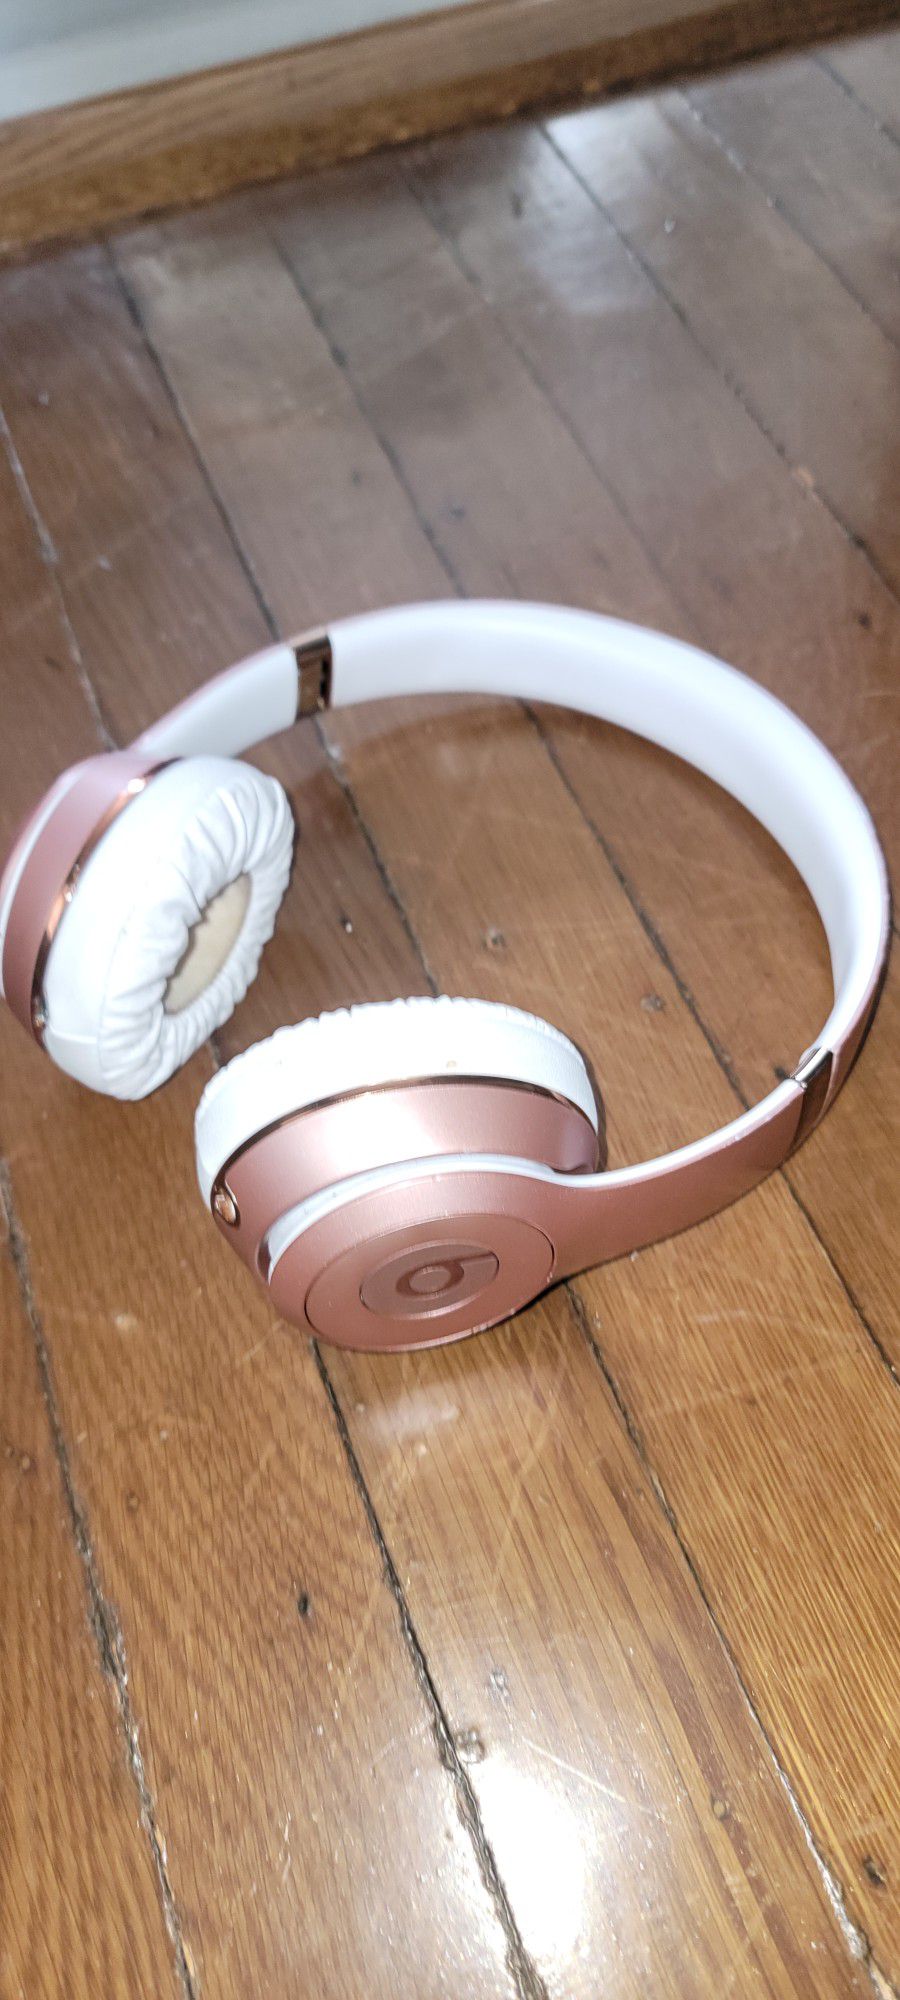 Bose Beats Solo 3 Headphones